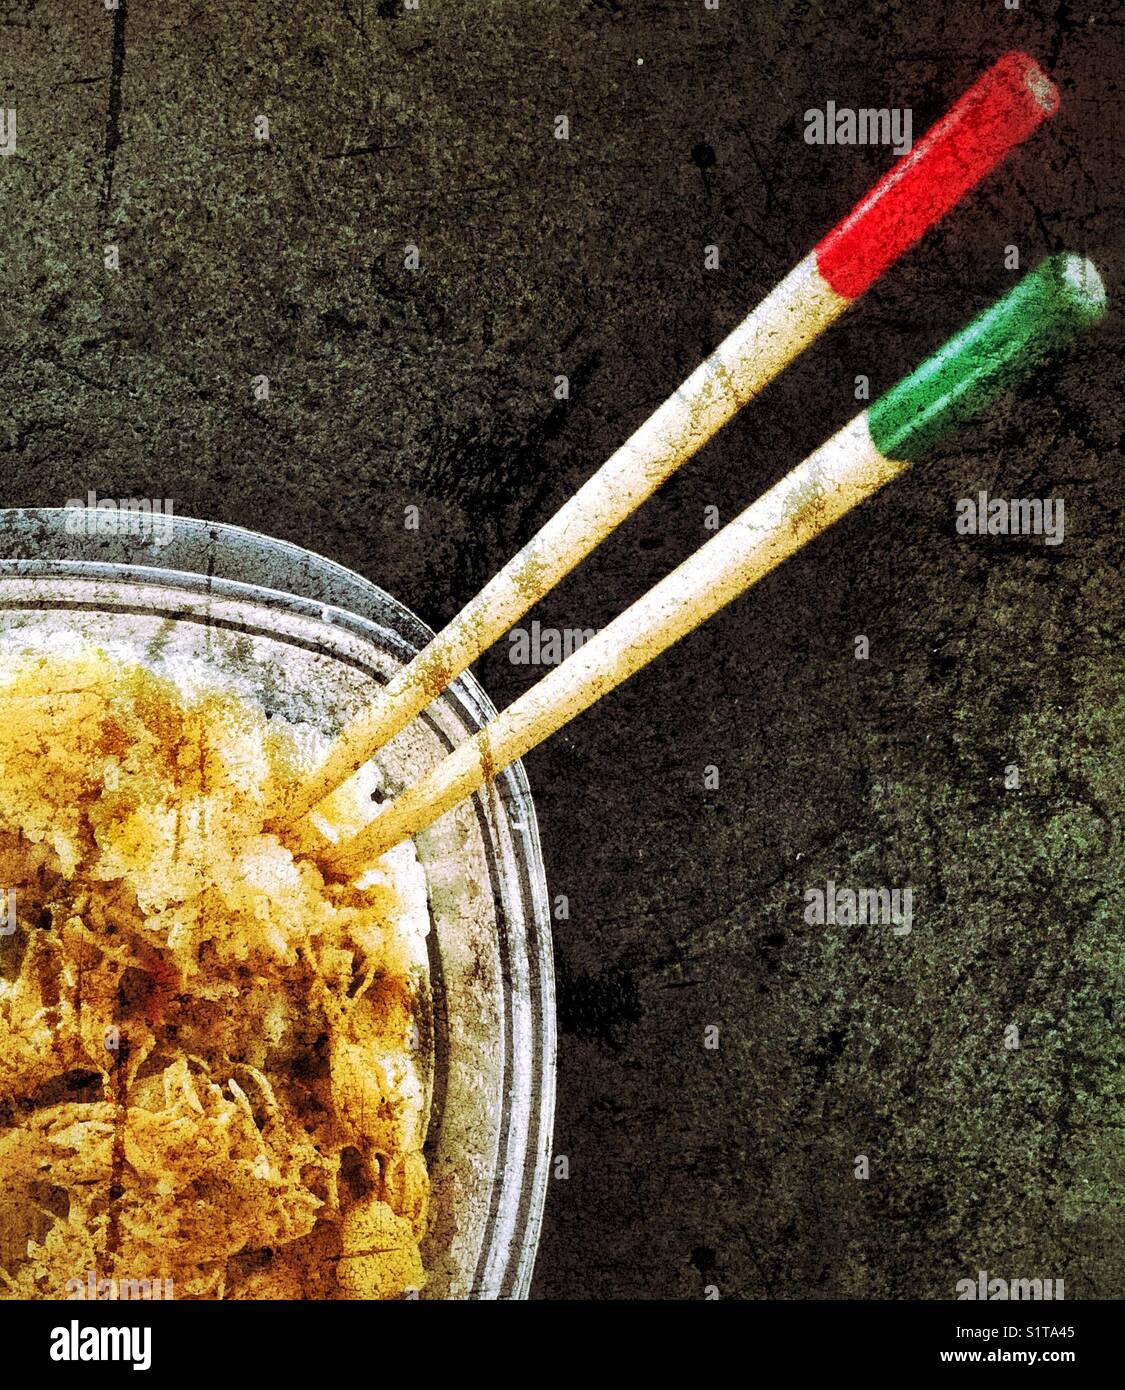 L' affichage des restes de riz avec du poulet au curry et baguettes avec extrémités rouge et vert Banque D'Images